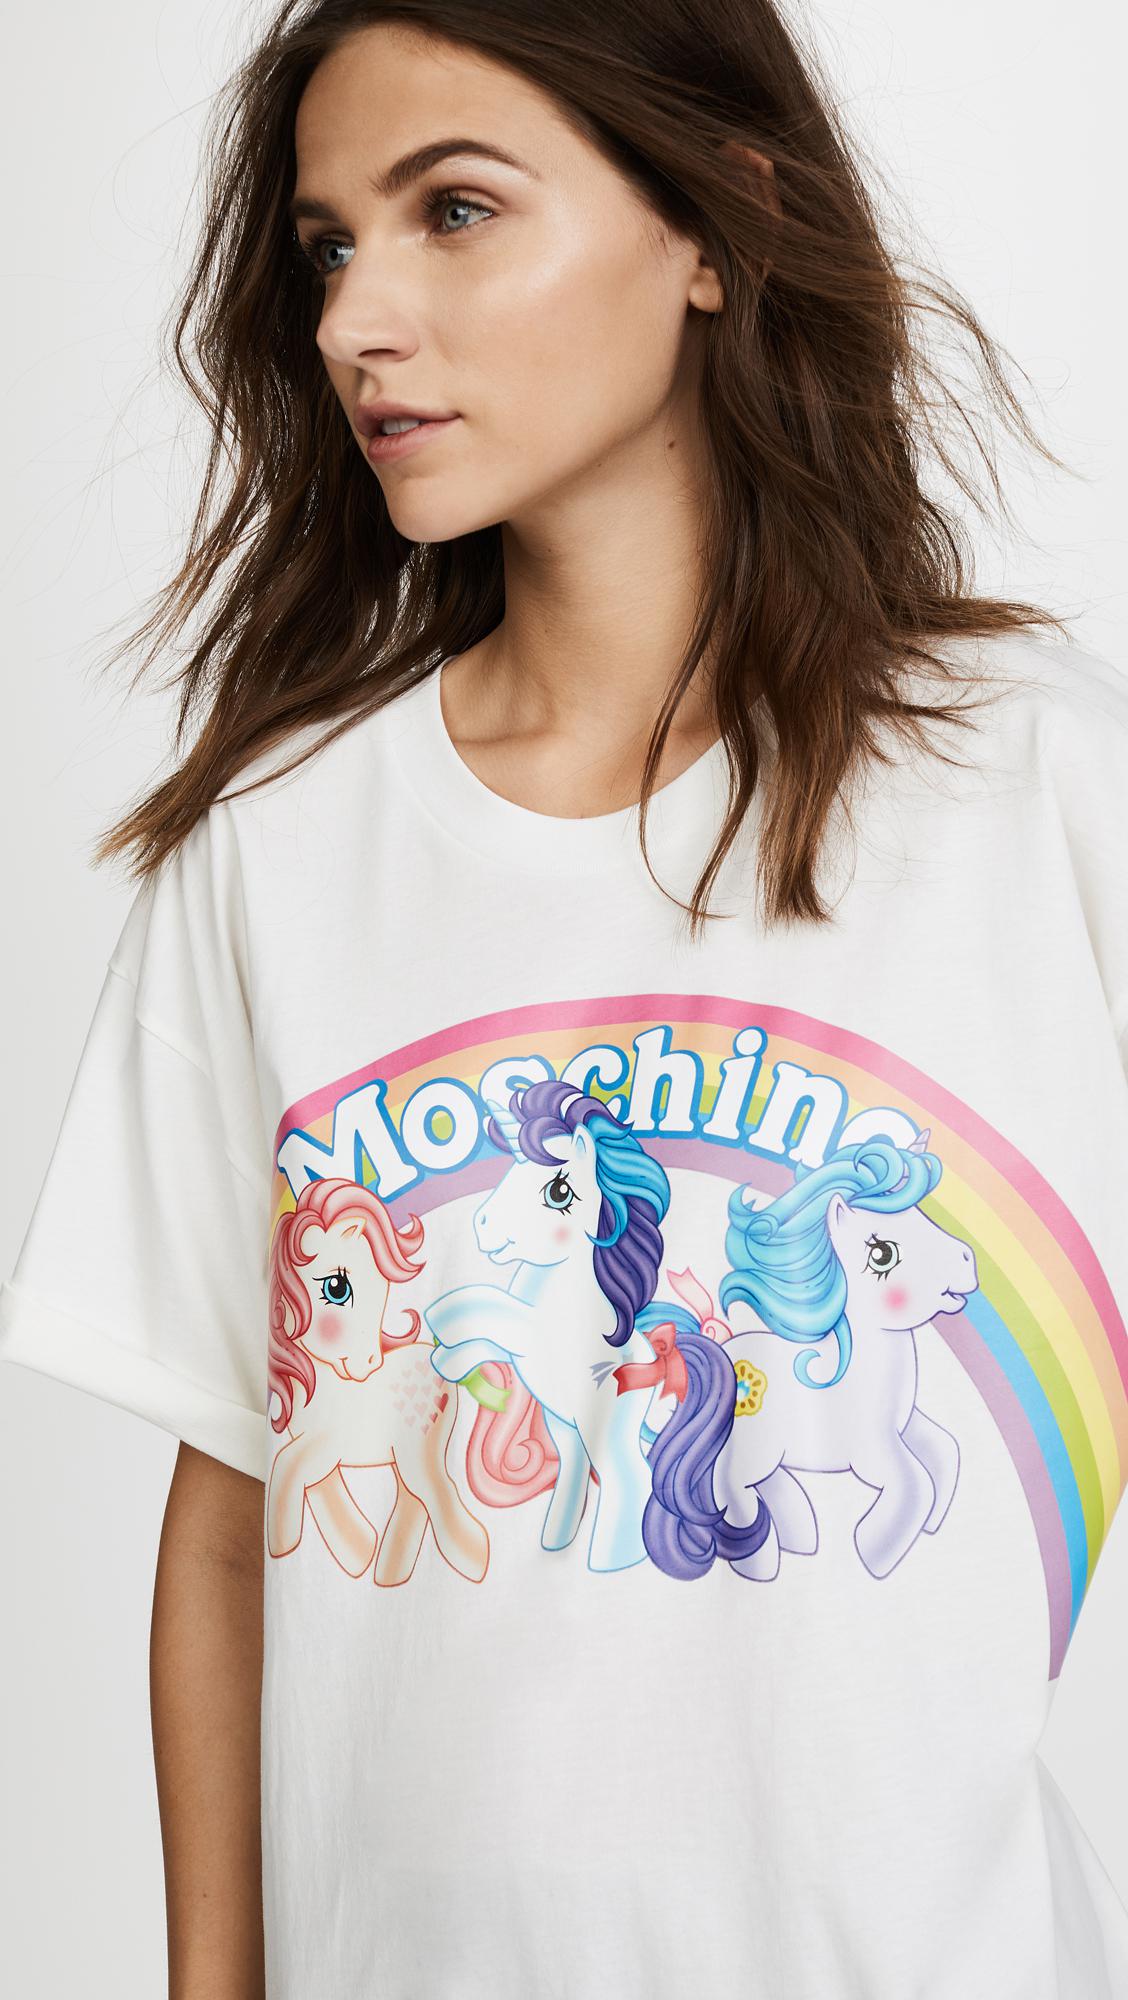 moschino unicorn shirt